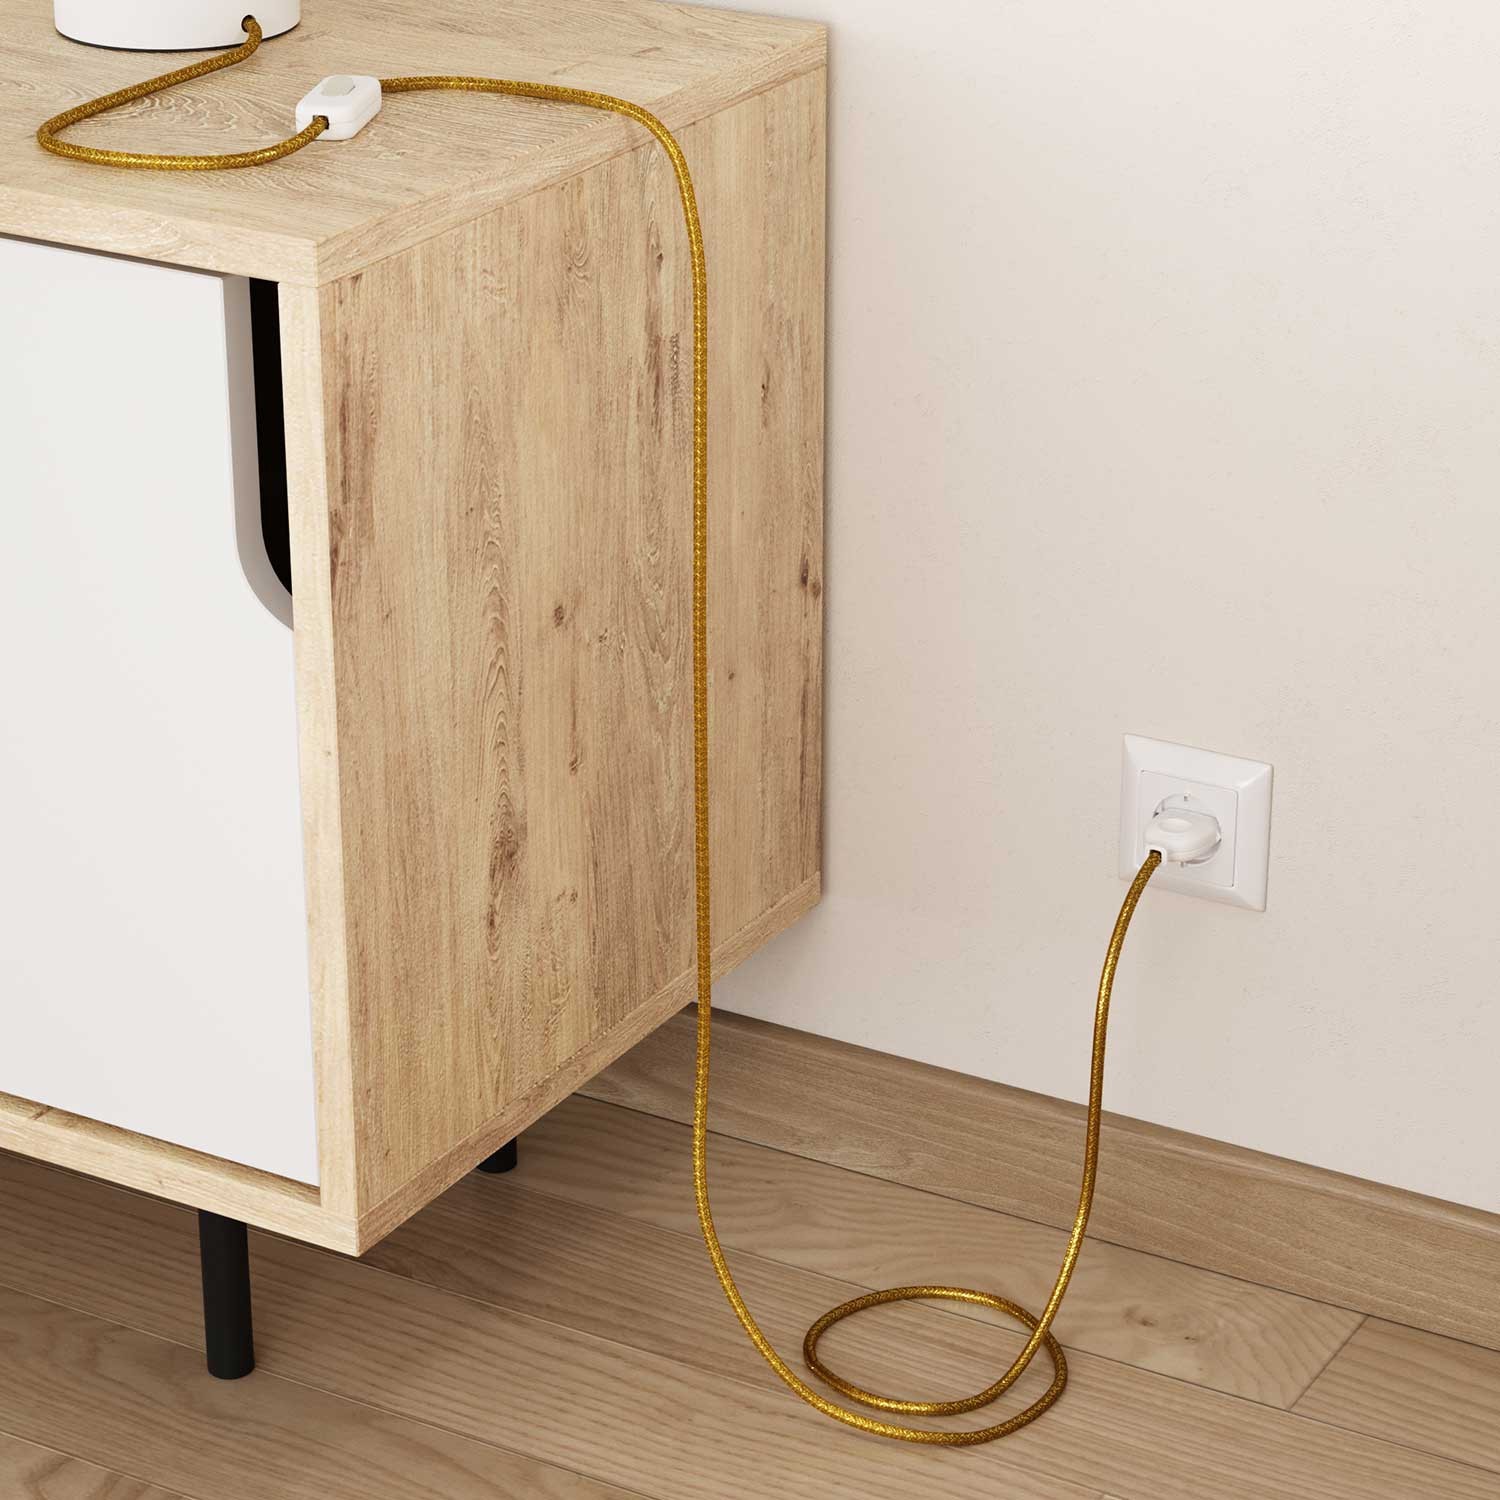 Okrúhly textilný elektrický kábel - lesklý, umelý hodváb, jednofarebný, RL05 Zlatá